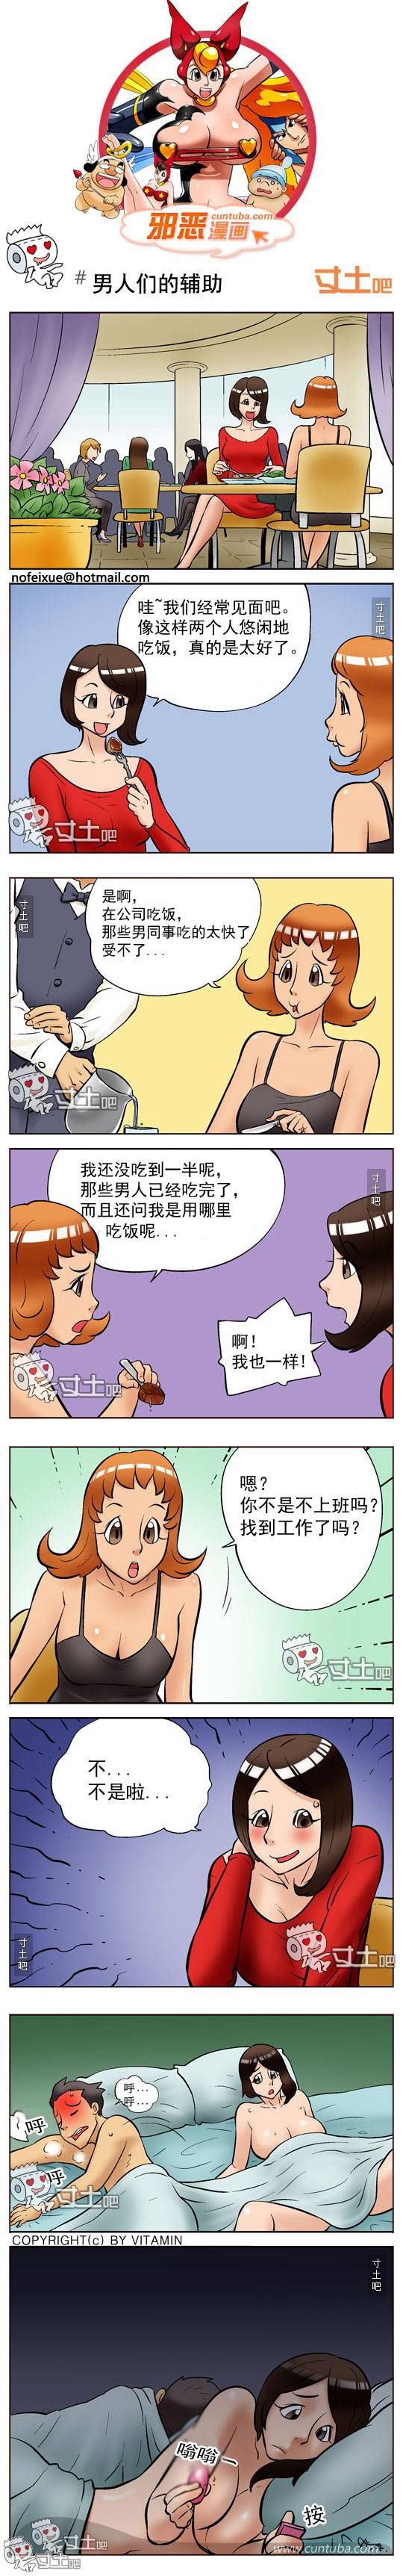 邪恶漫画爆笑囧图第264刊：圣神的治疗水